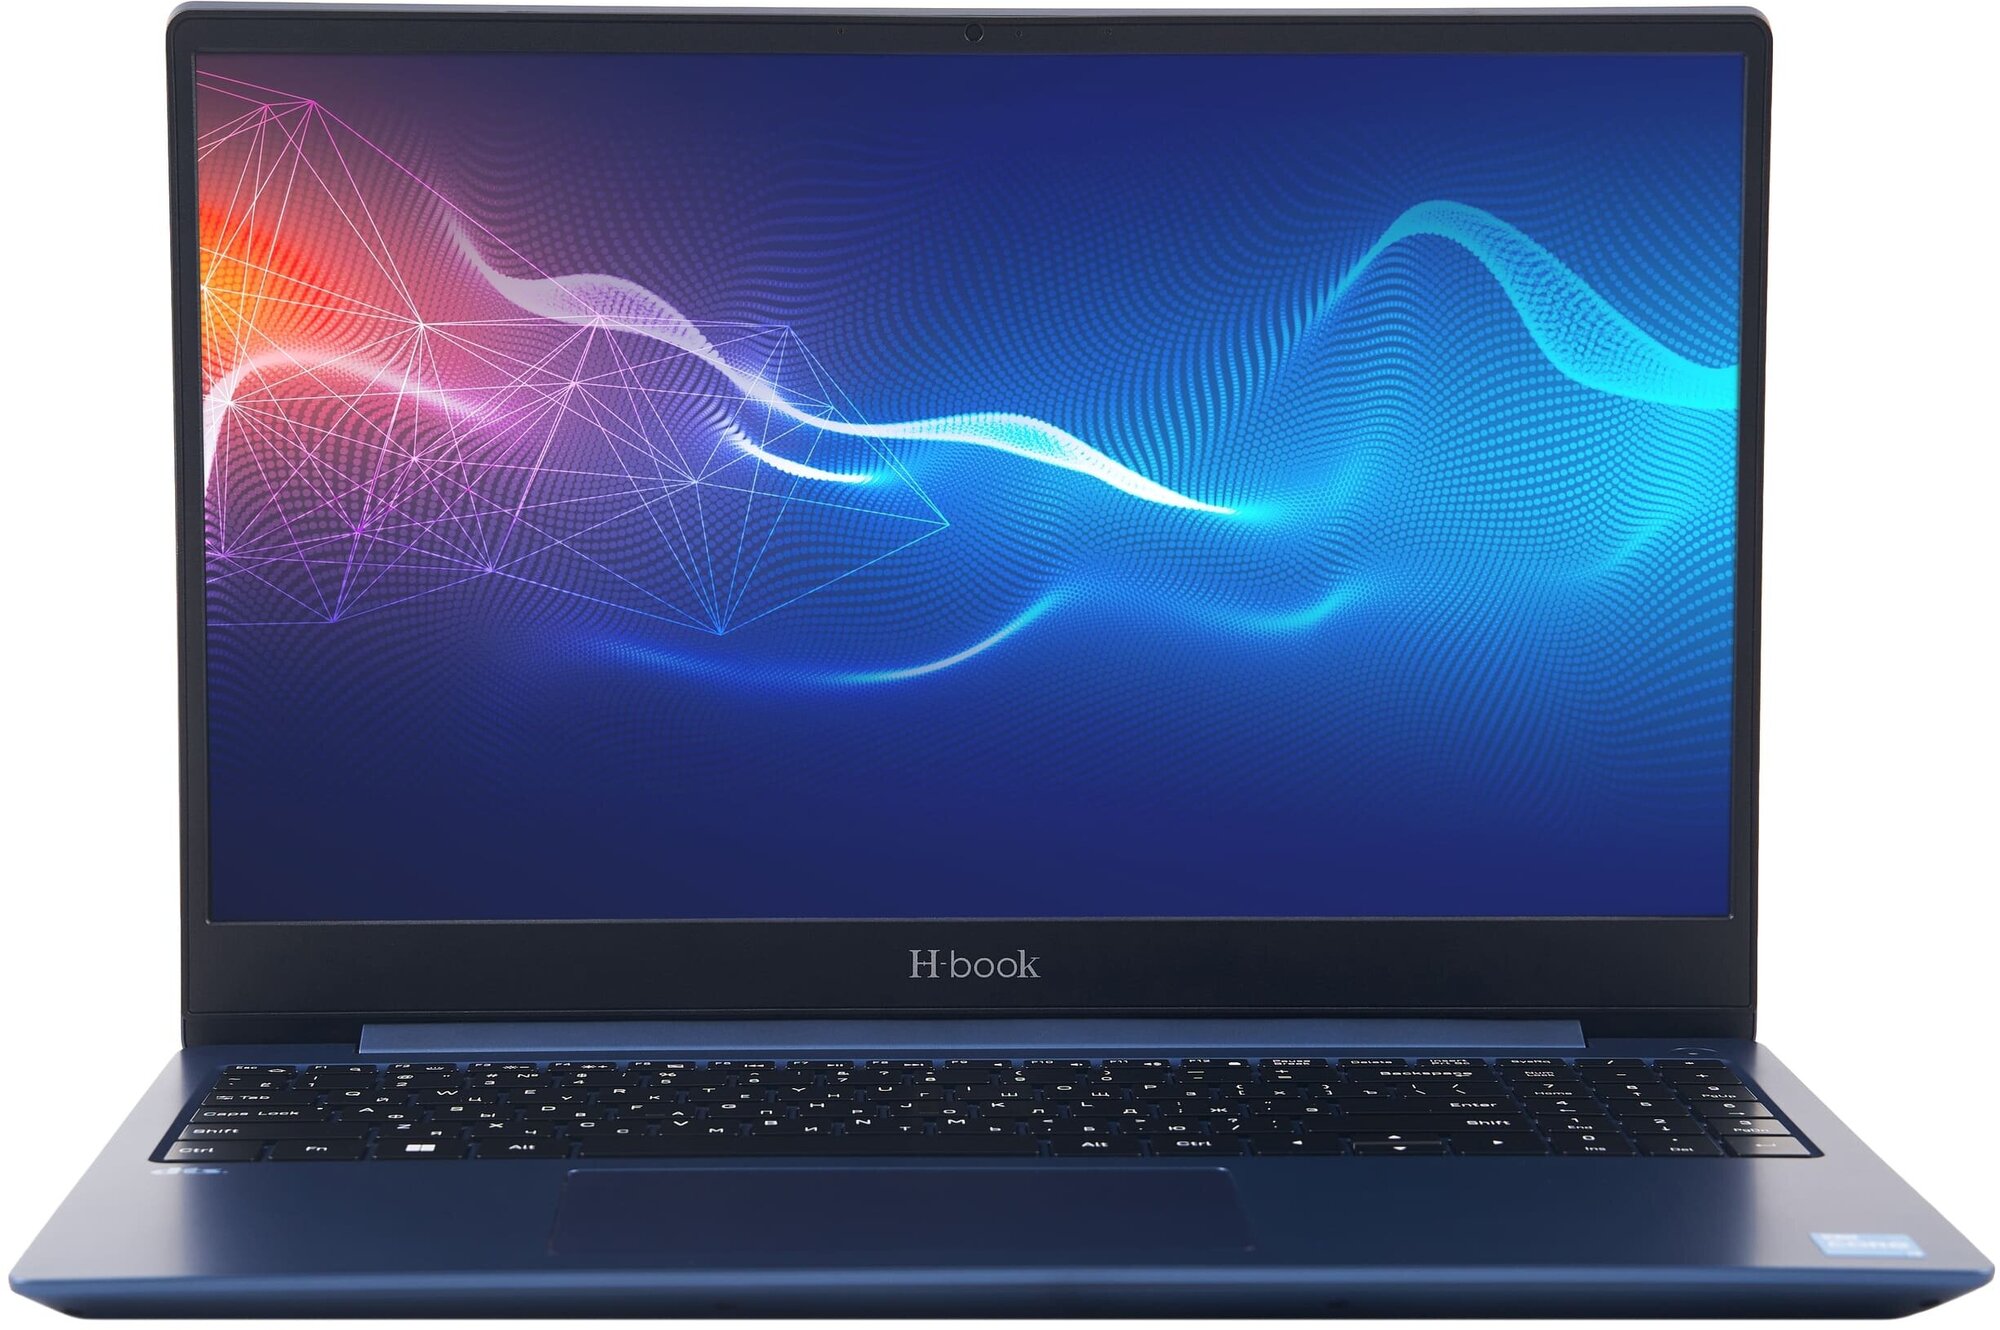 Ноутбук Horizont H-book 15 MAK4 (T32E3W) 1920x1080, Intel Core-i3 1115G4 3.0 ГГц, RAM 8 ГБ, SSD 256 ГБ